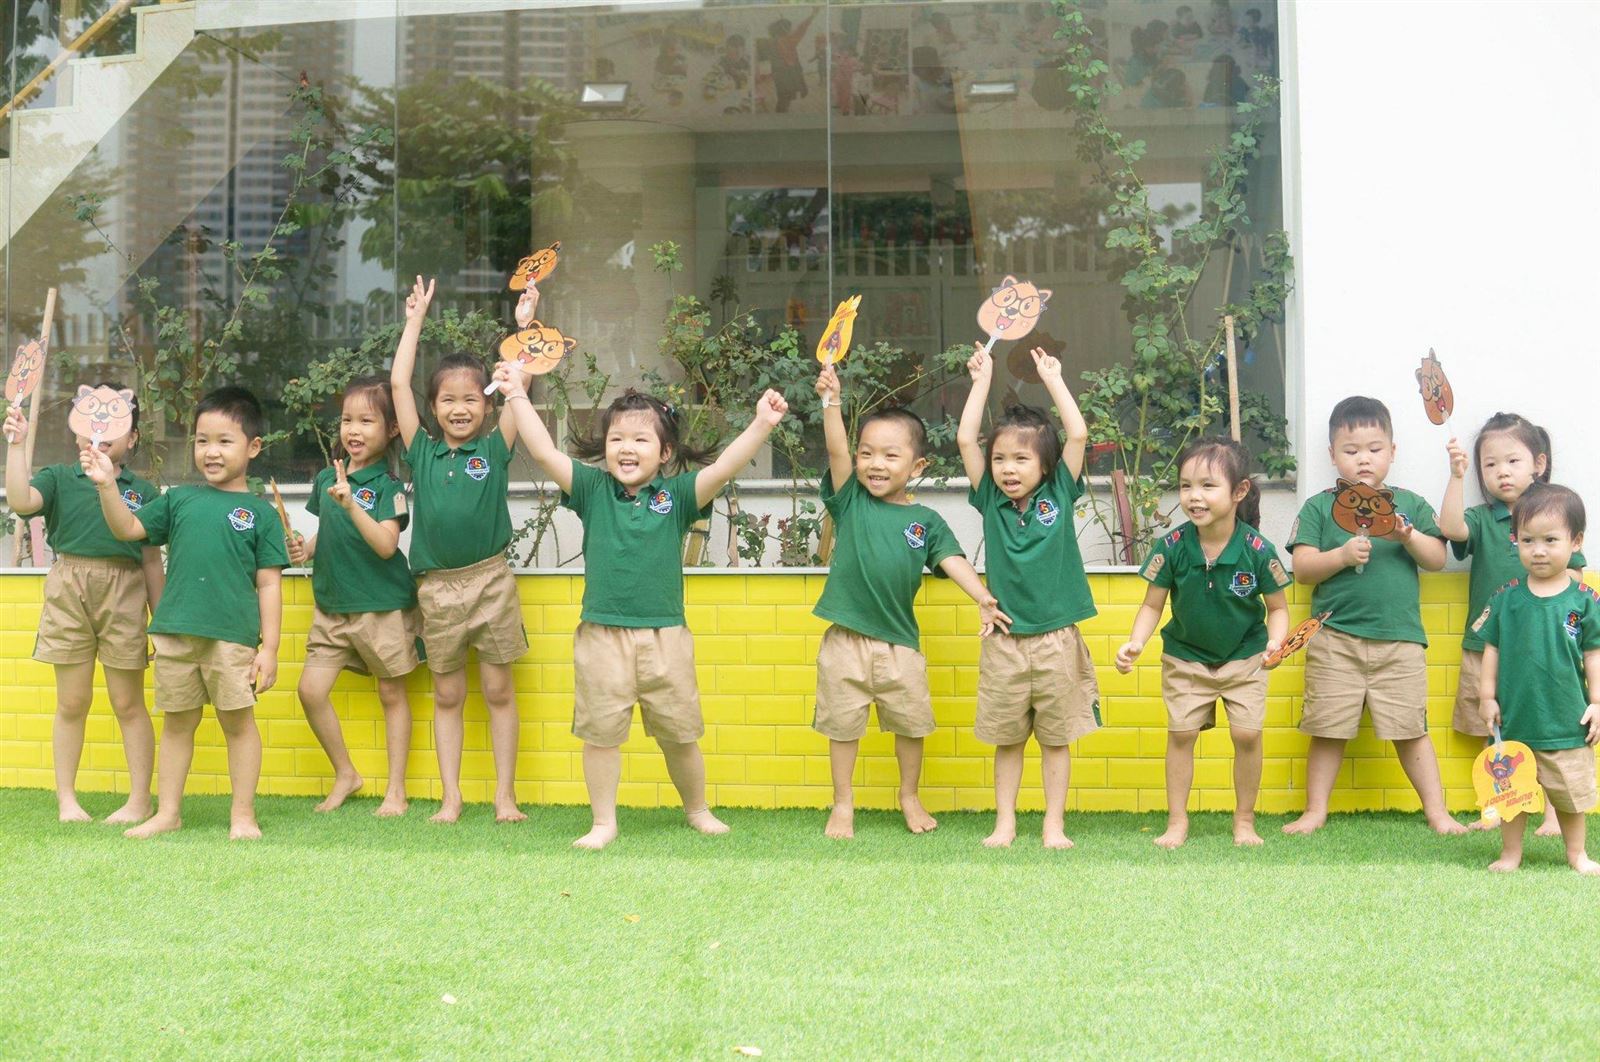 Dongsim Kindergarten - Trường học hạnh phúc cho những đứa trẻ hạnh phúc